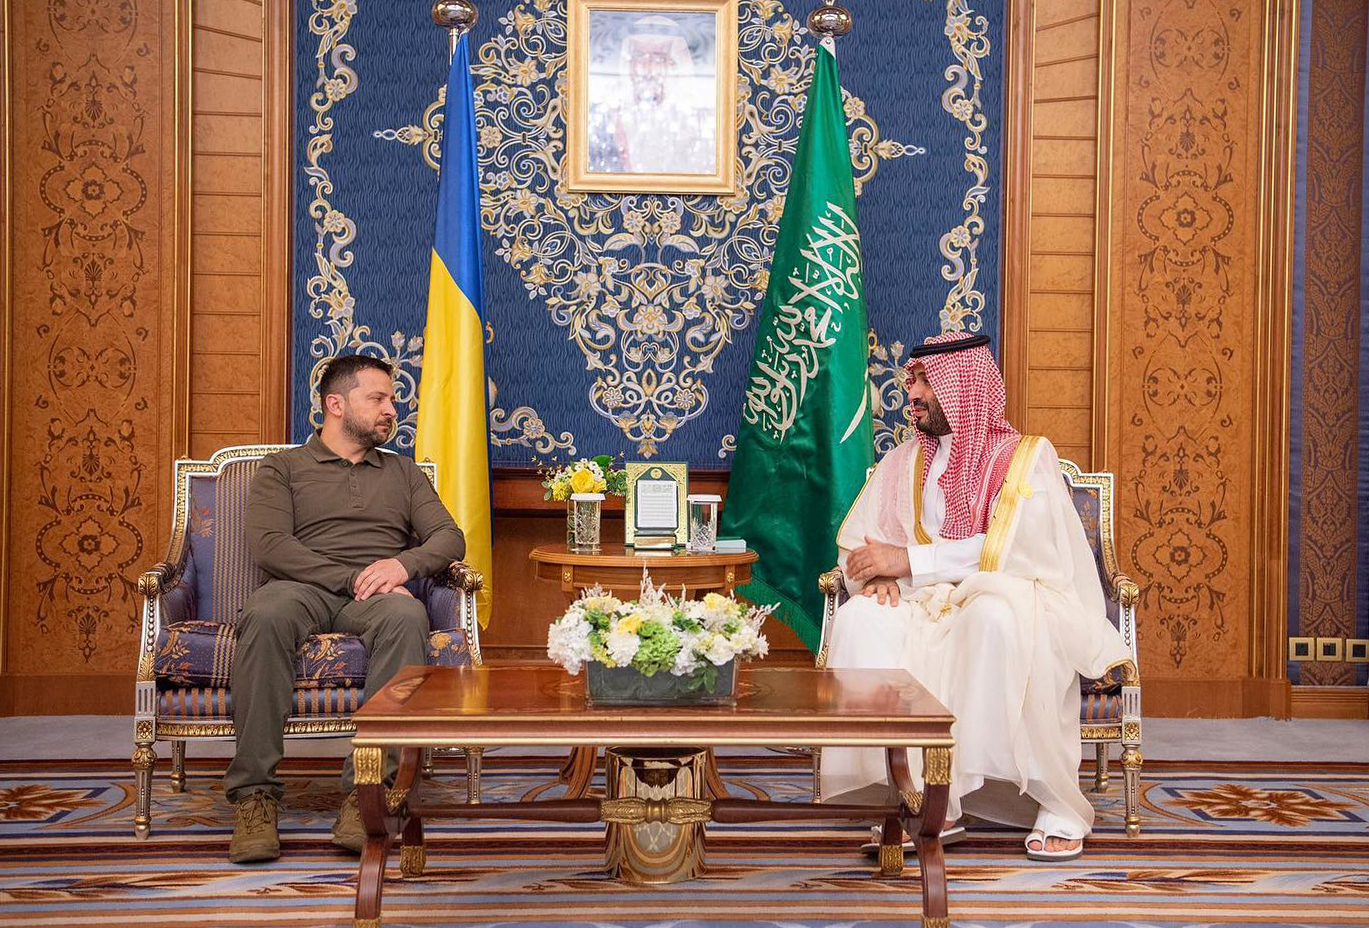 ولي العهد السعودي يؤكد حرص المملكة ودعمها لحل الأزمة الأوكرانية